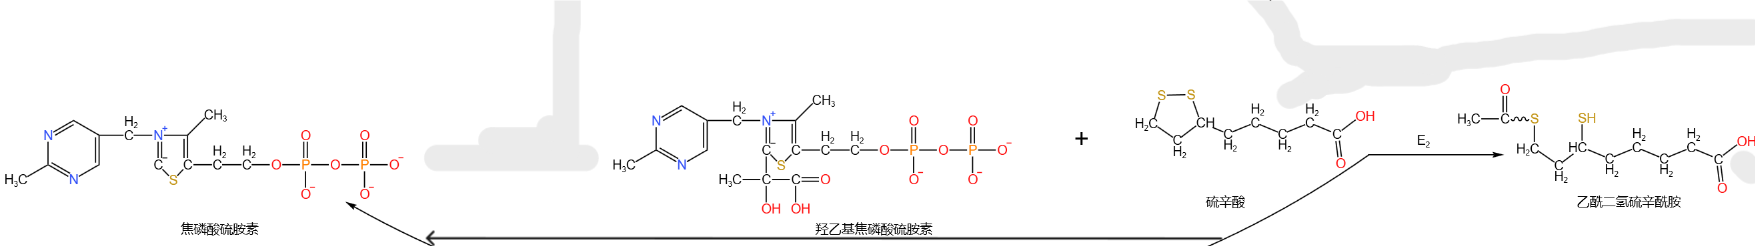 Ac-dihydrolipoamide_TPP